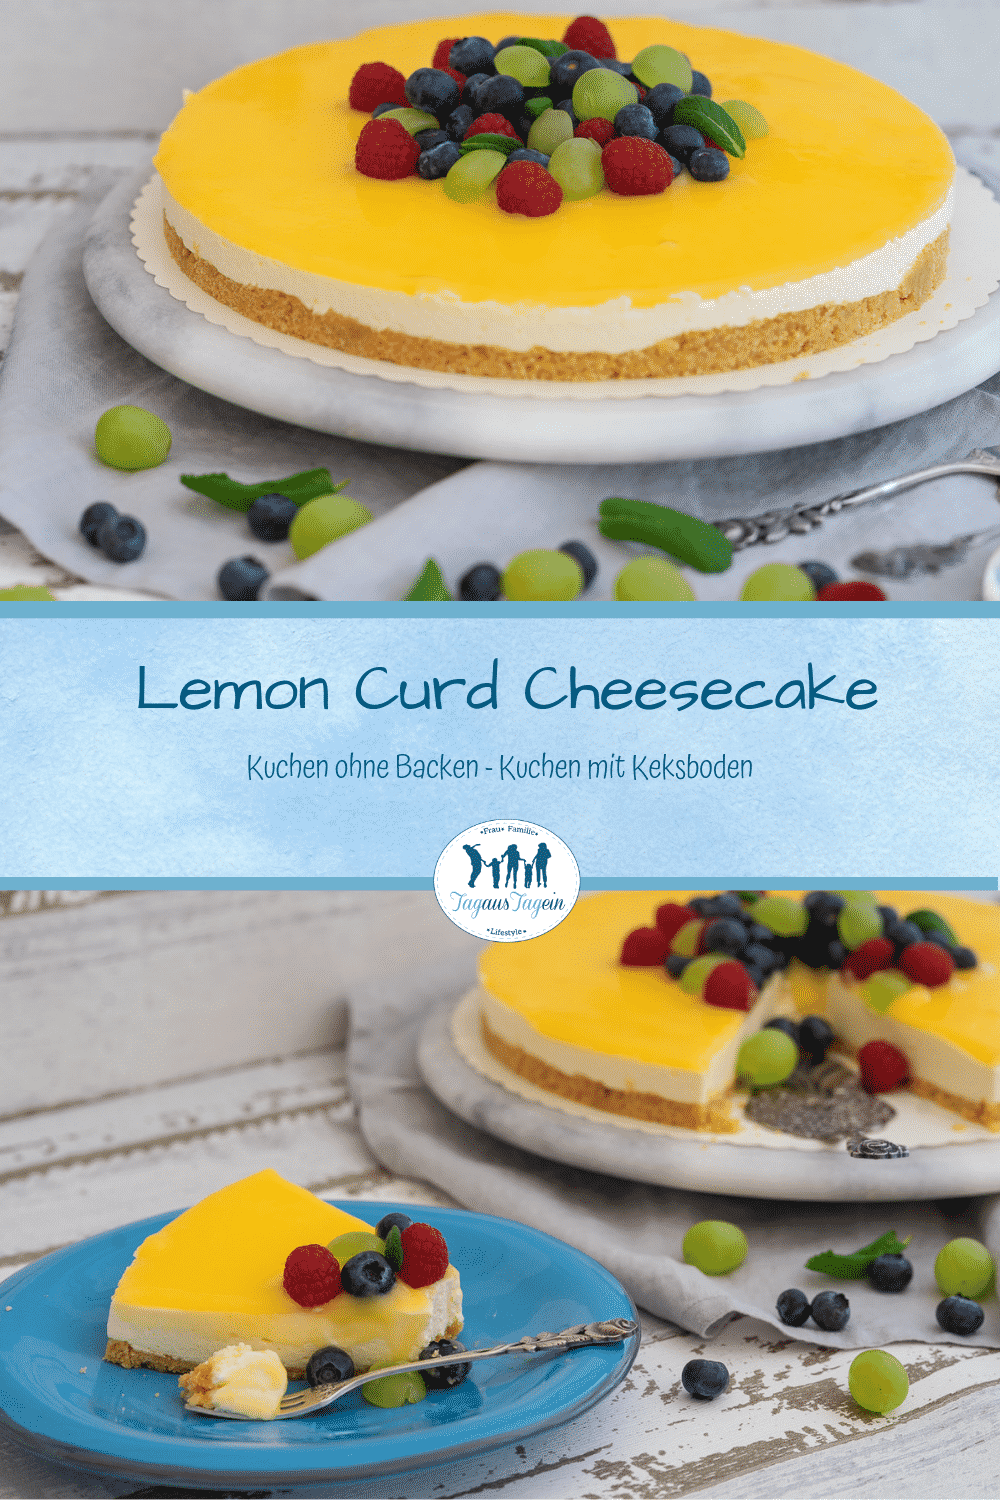 Lemon Curd Cheesecake mit Keksboden Käsekuchen ohne backen